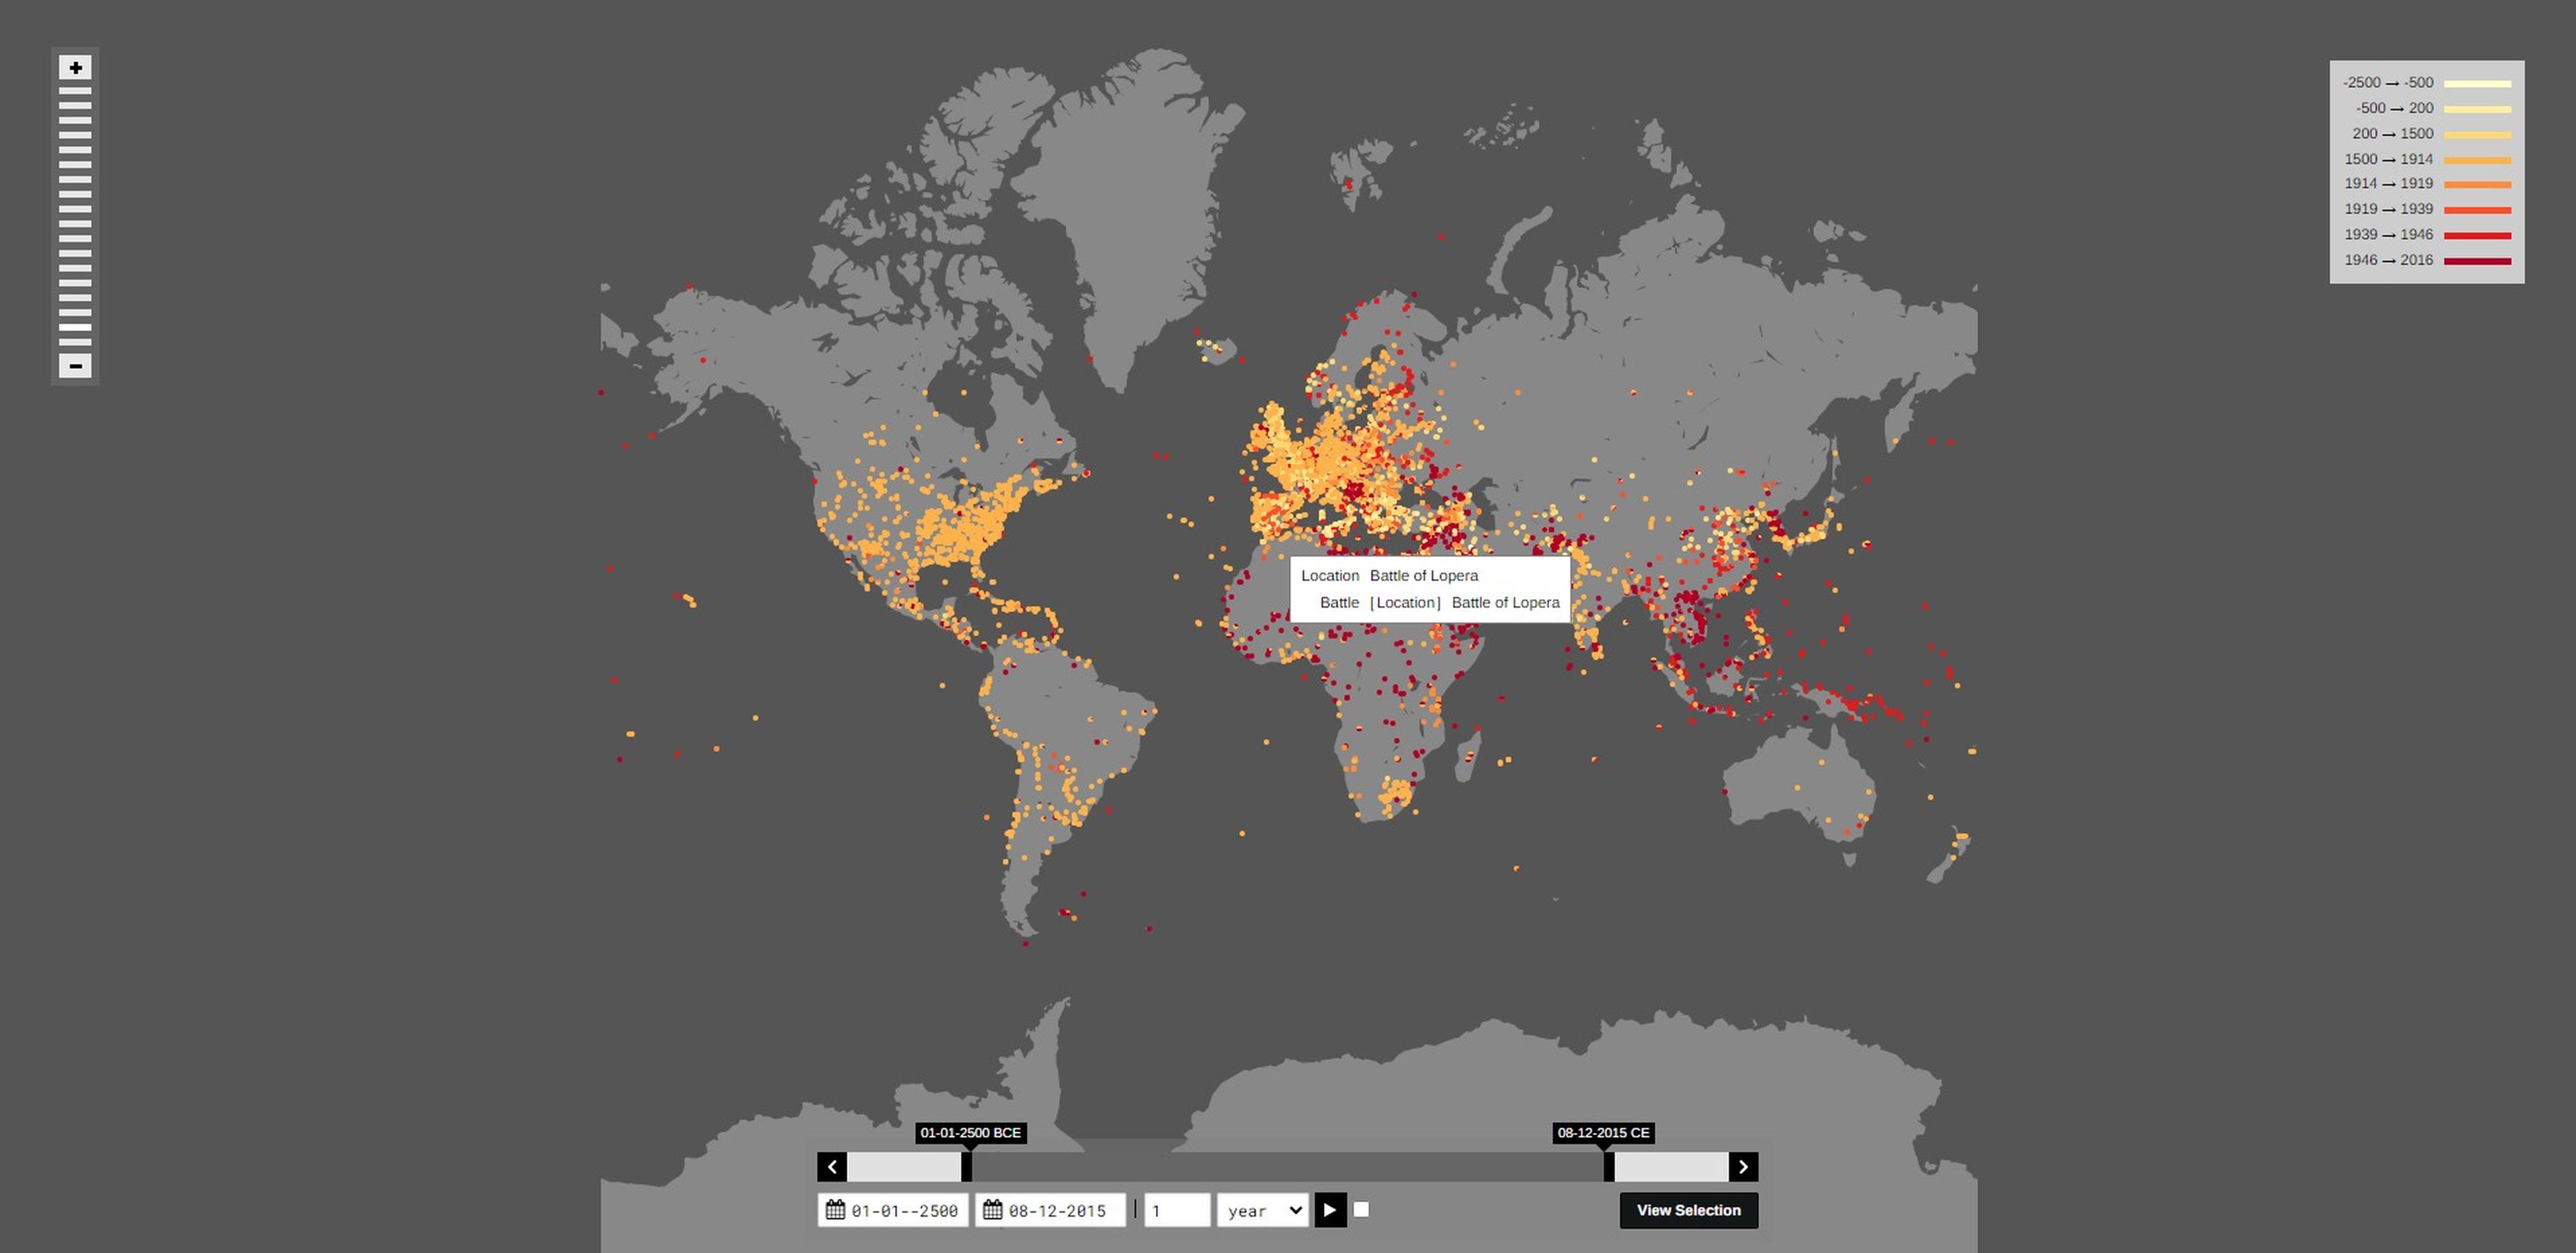 El mapa que te muestra las revueltas, batallas y guerras que ha habido, históricamente, en tu barrio